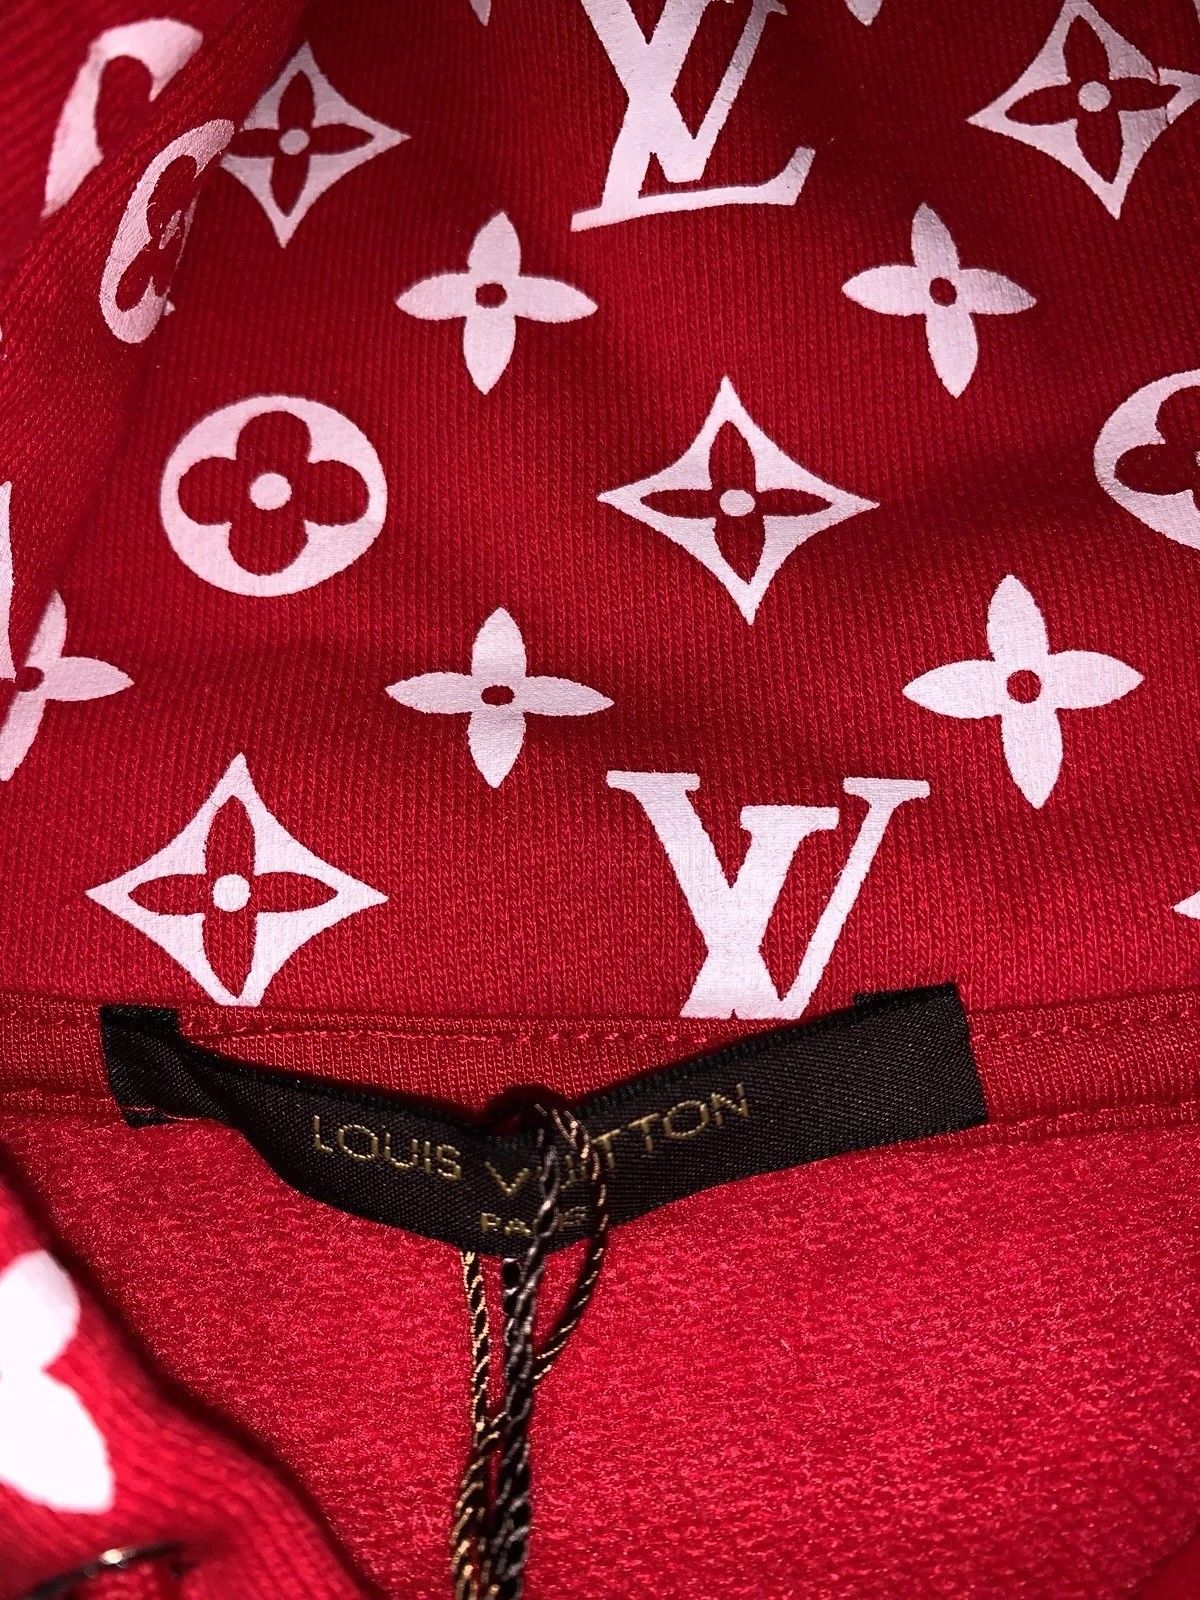 LOUIS VUITTON x SUPREME BOX LOGO HOODIE RED SS17 XL / New